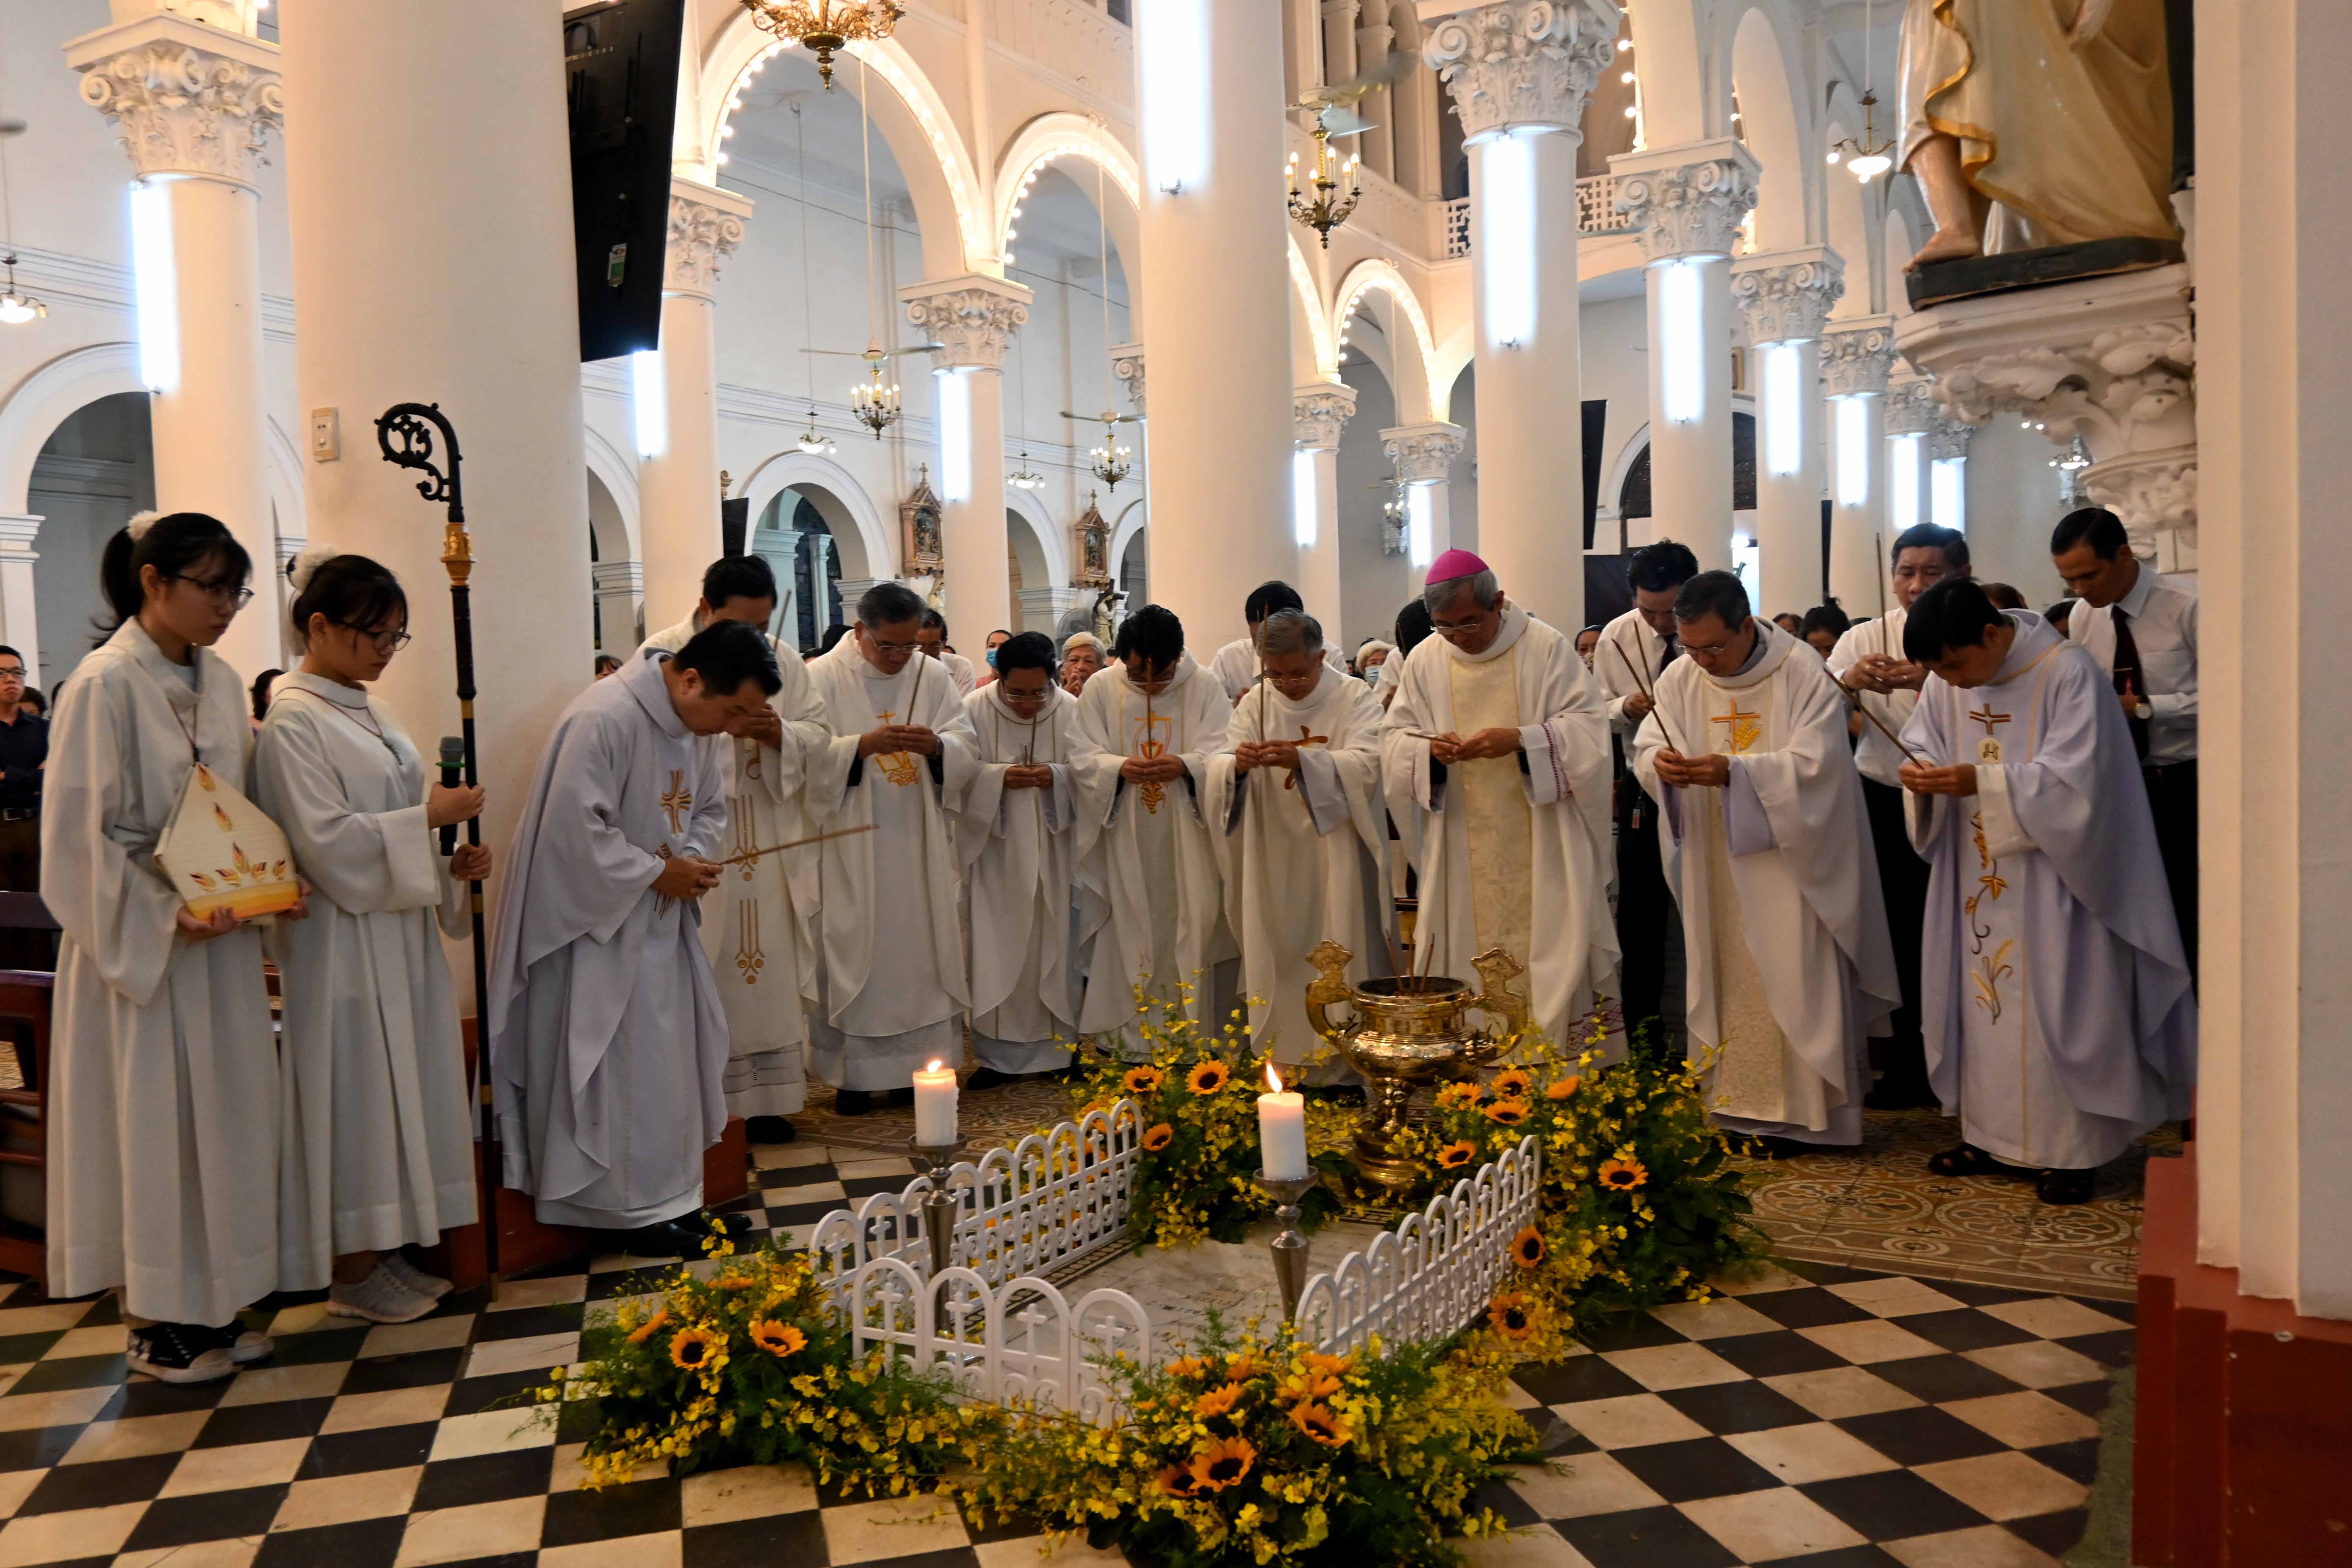 Giáo xứ Tân Định: Lễ giỗ 137 năm Cha sở Eveillard Sơn và cầu bình an cho việc trùng tu Nhà thờ